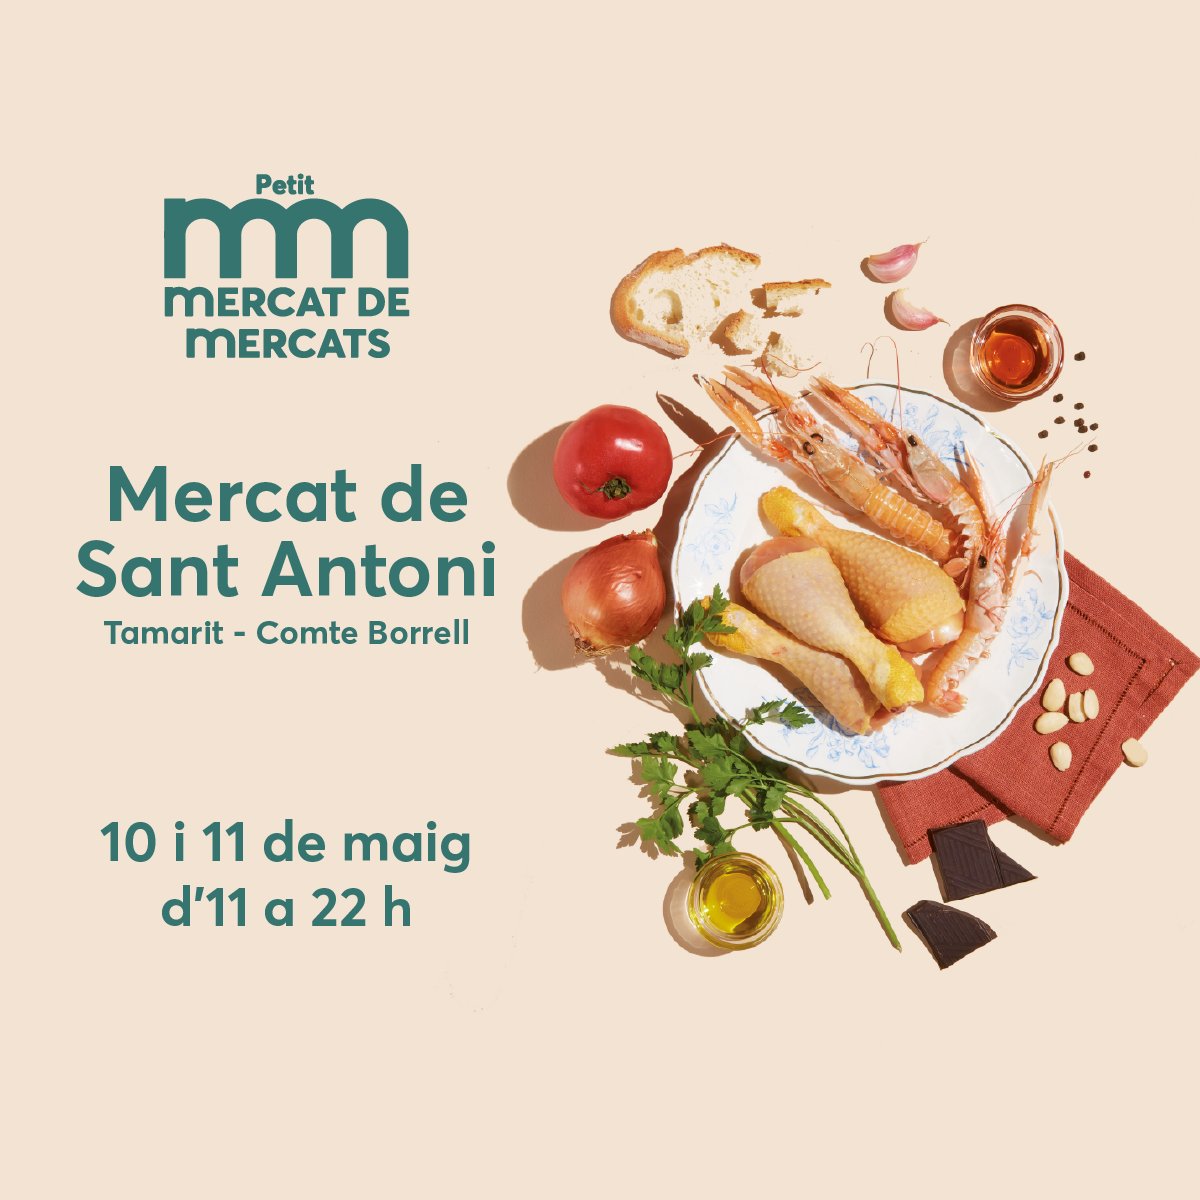 El Petit Mercat de Mercats arriba al @mercatstantoni! 🗓️ 10 i 11 de maig 🙌 Amb la participació del @Santoni_dom i @EncantsStAntoni. 🎶 Hi trobareu l'essència dels mercats, activitats, xerrades, showcookings, tallers, música... ℹ️via.bcn/hSpK50RA7CP